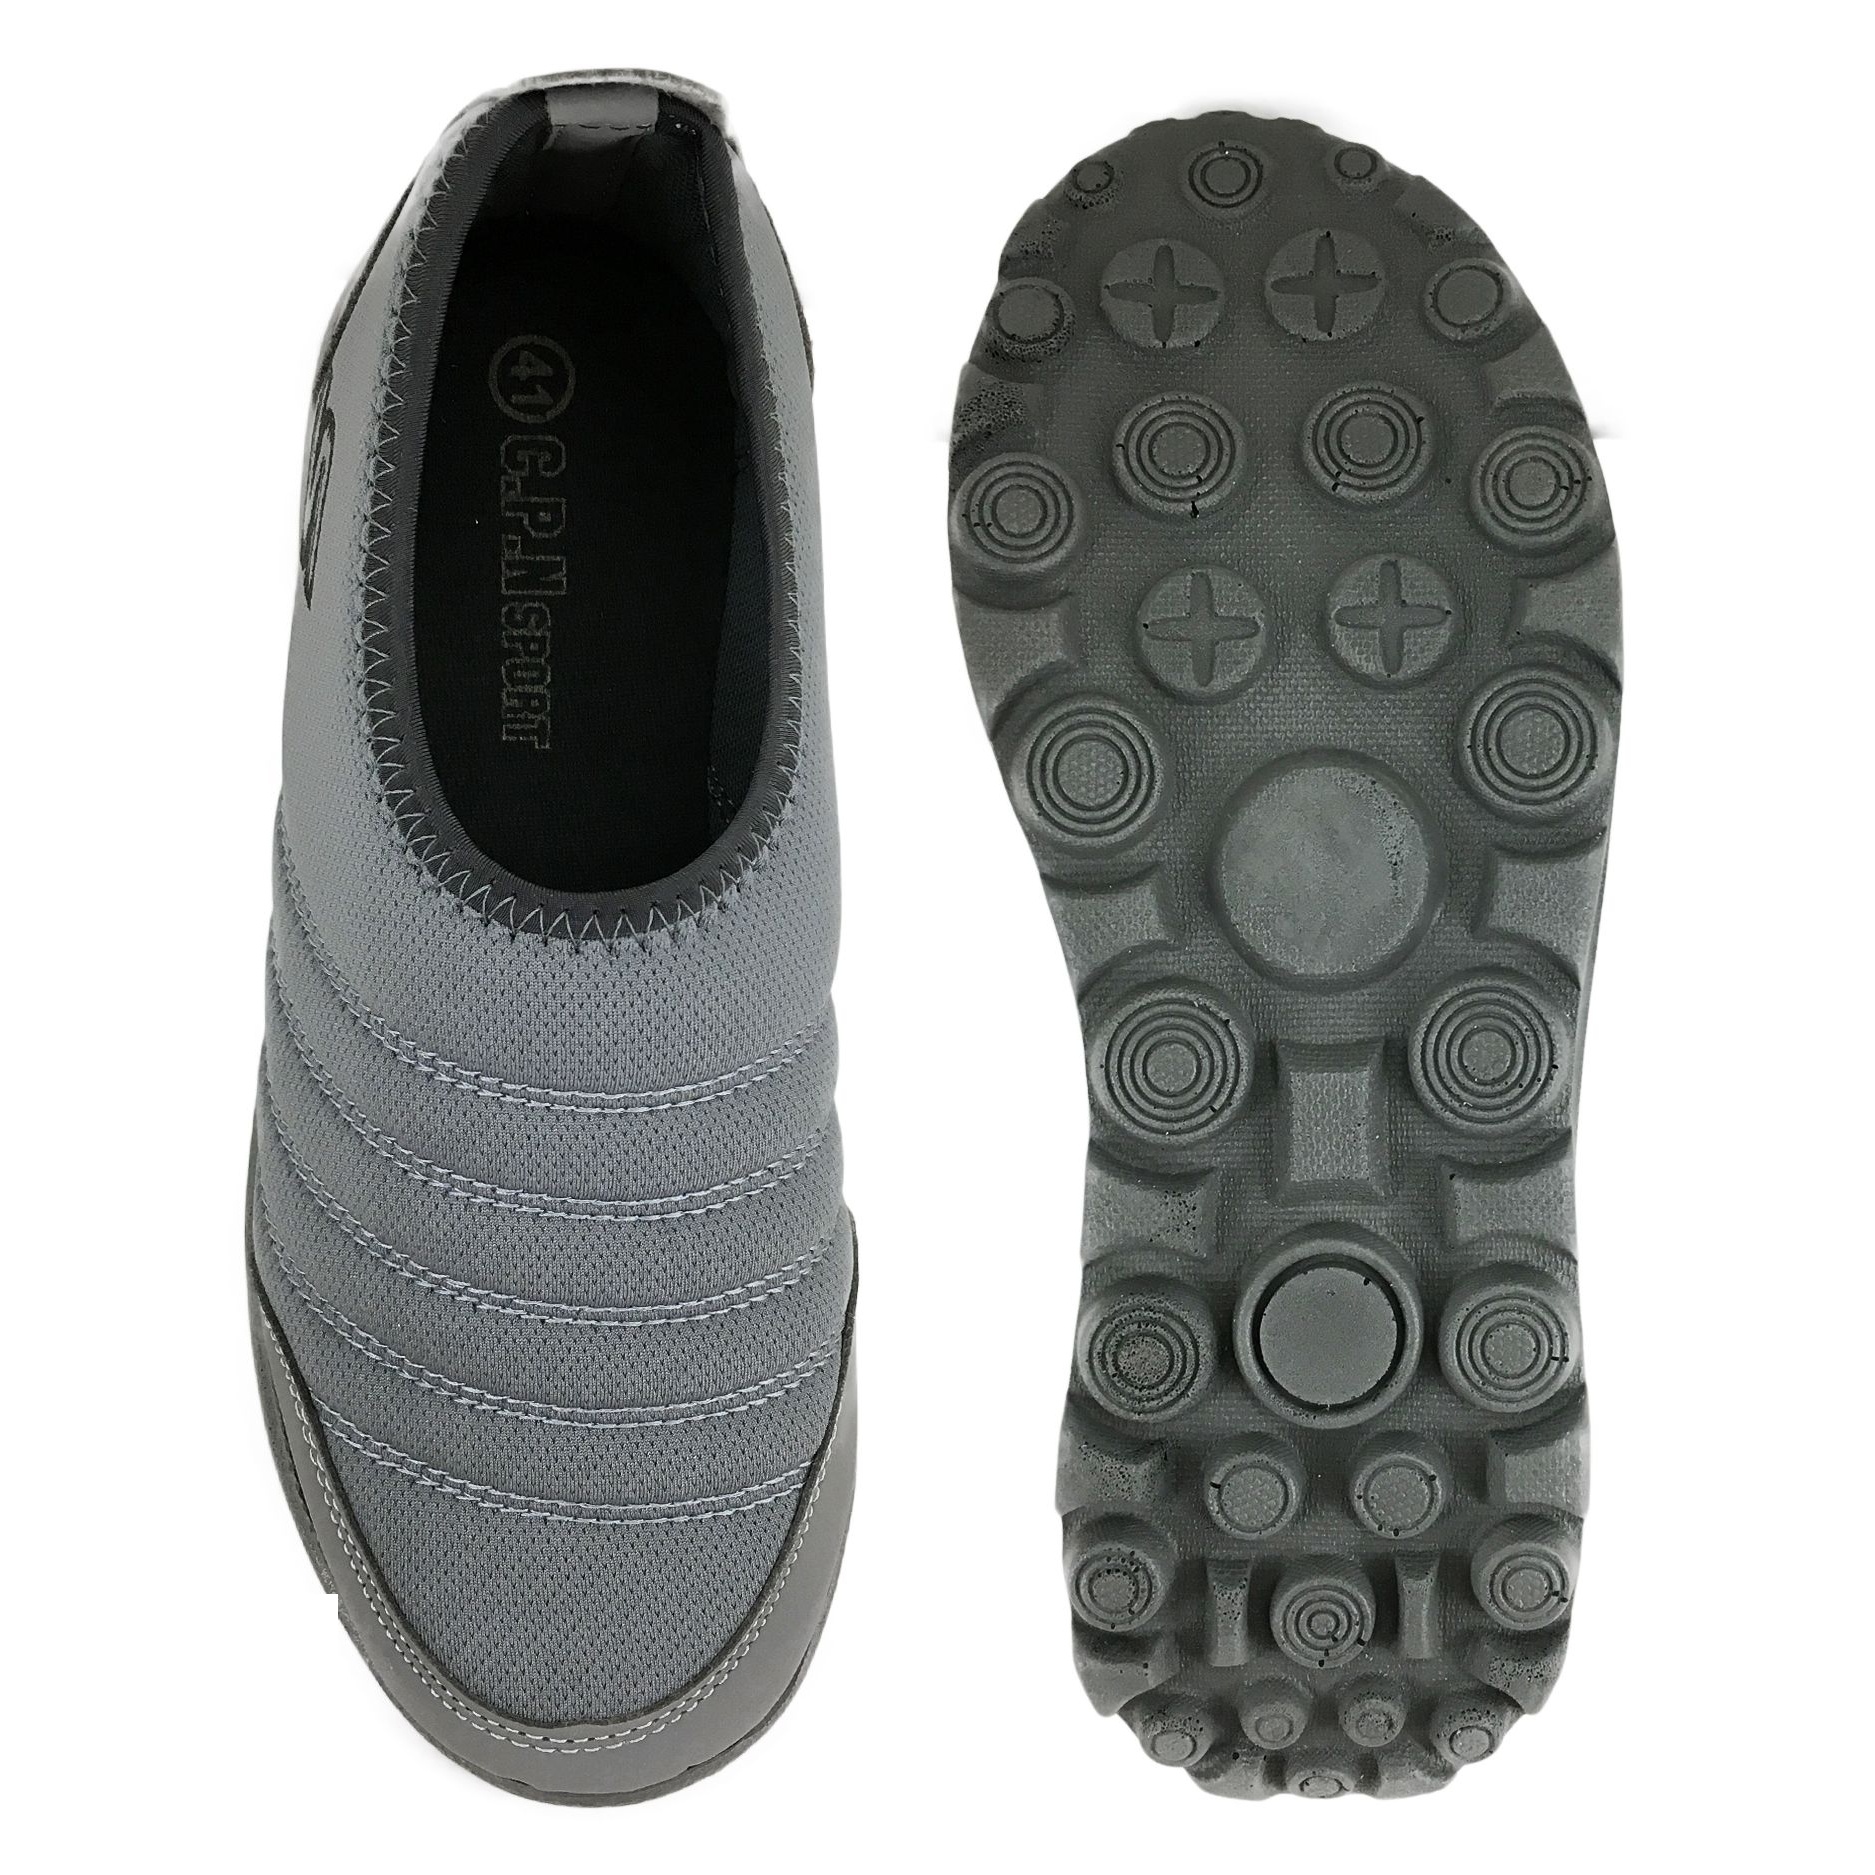  کفش مخصوص پیاده روی مردانه مدل چپان کد 4030